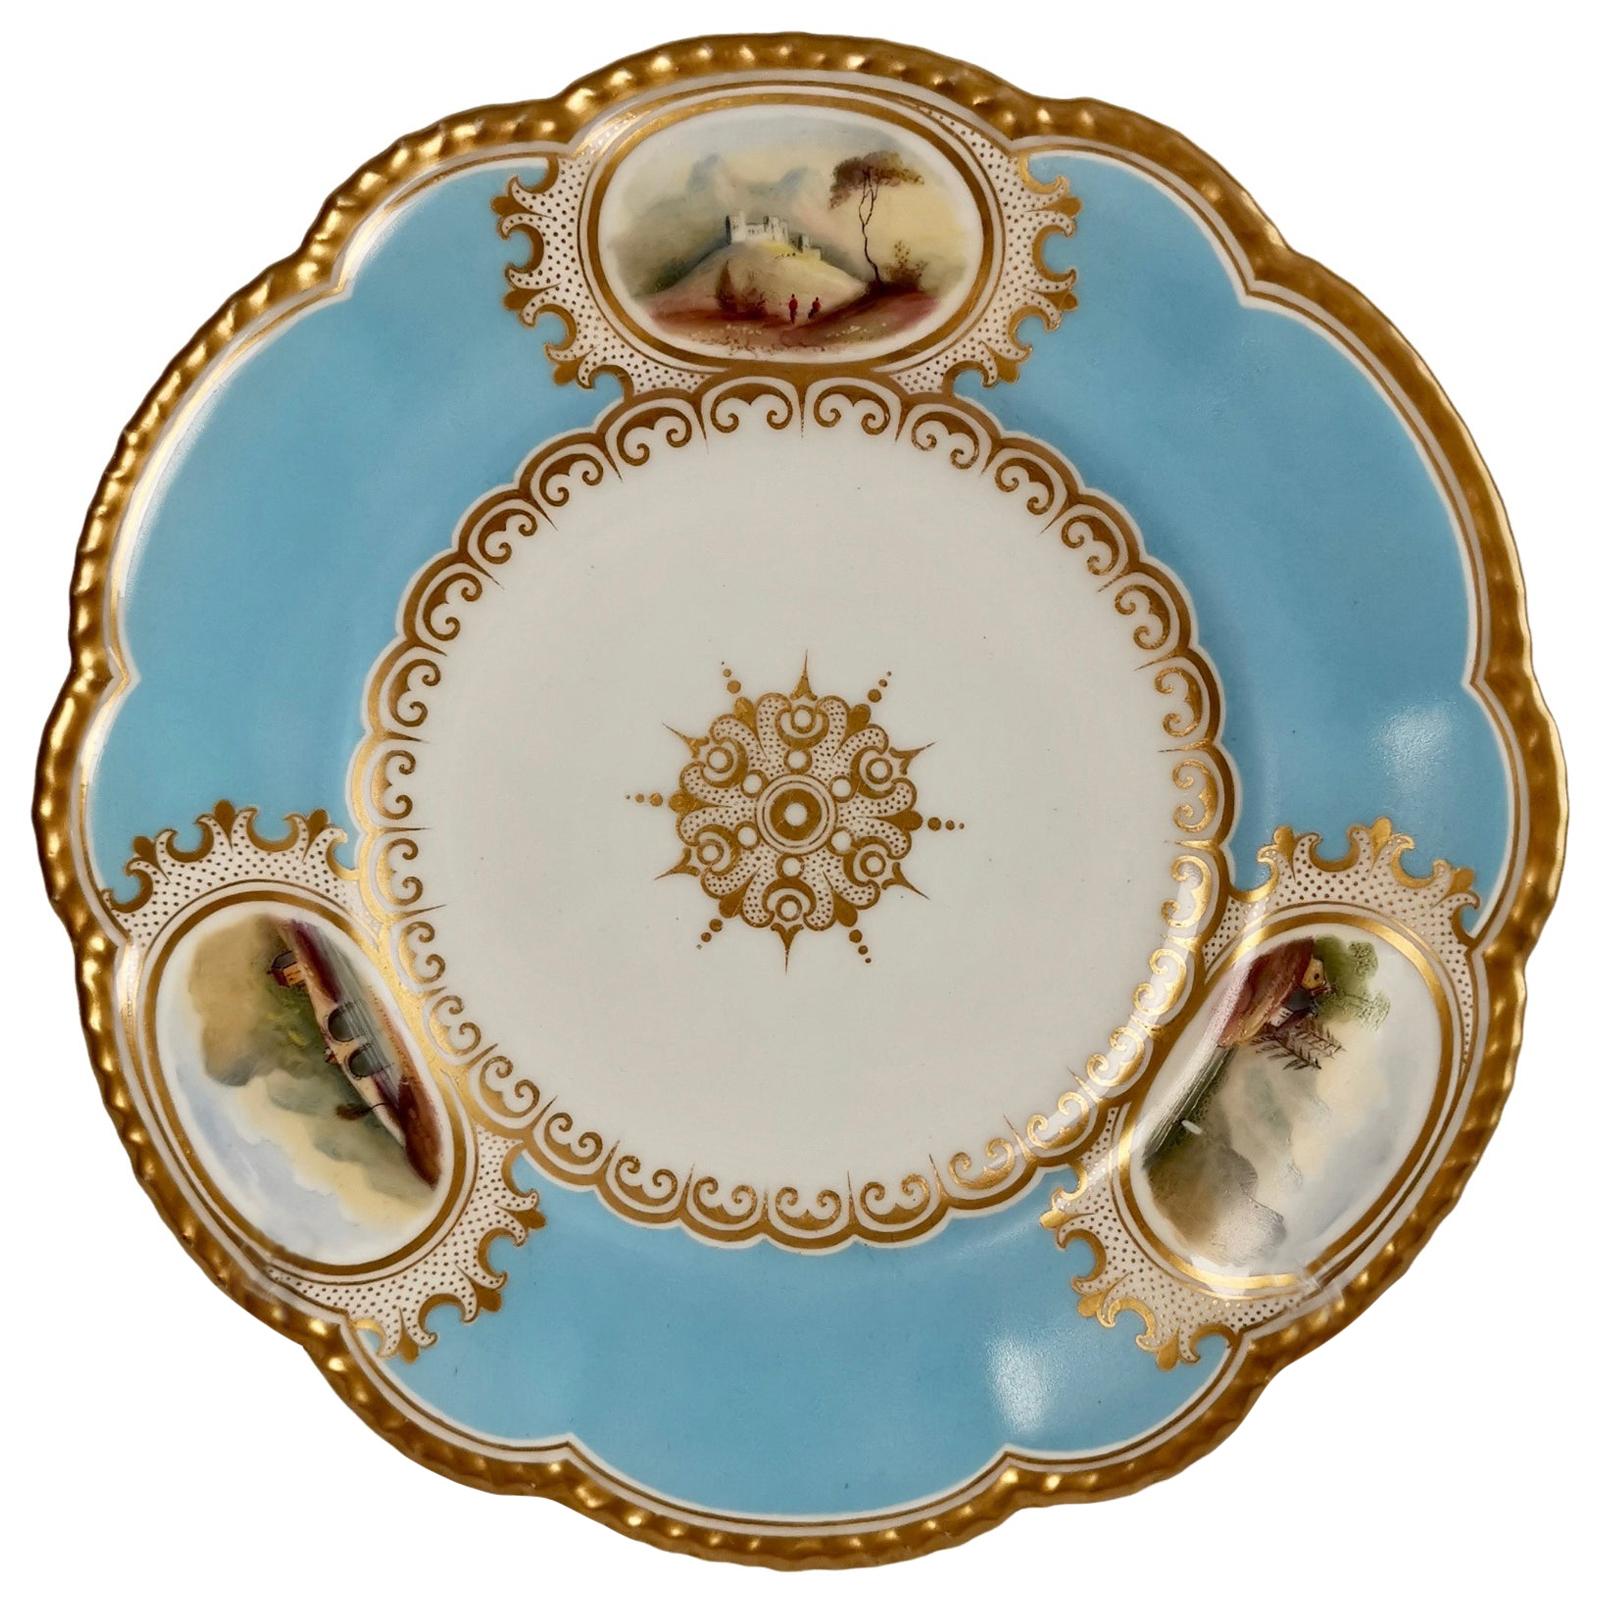 Grainger Worcester Porcelain Plate, Sky Blue with Landscapes, Victorian